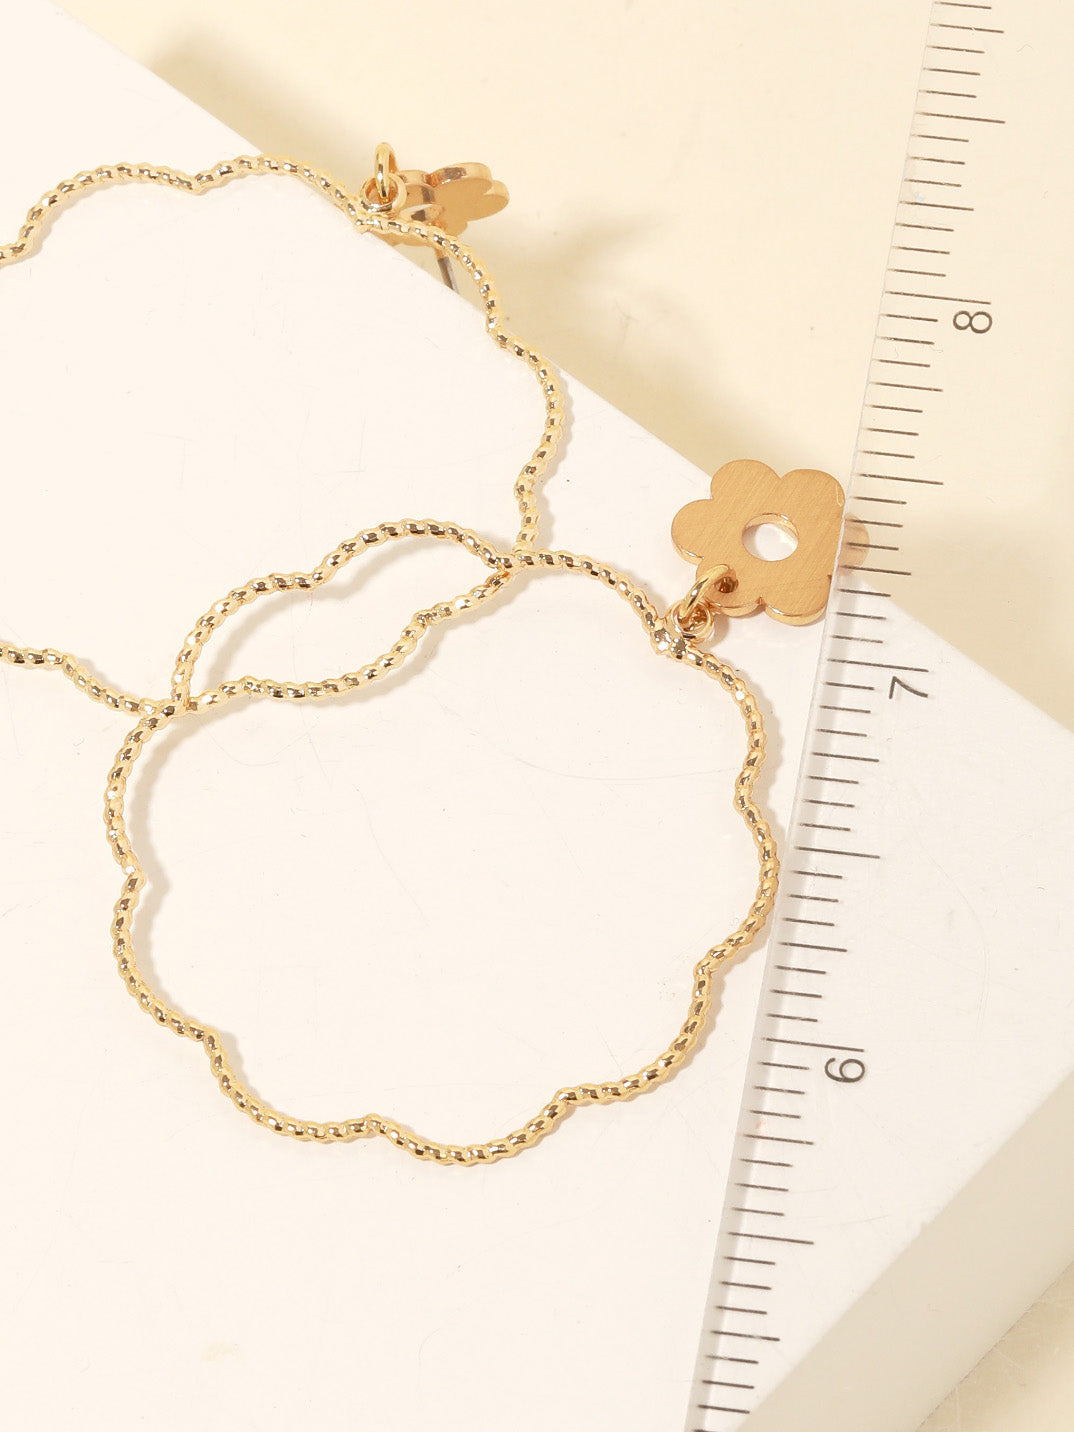 gold bella flower earrings